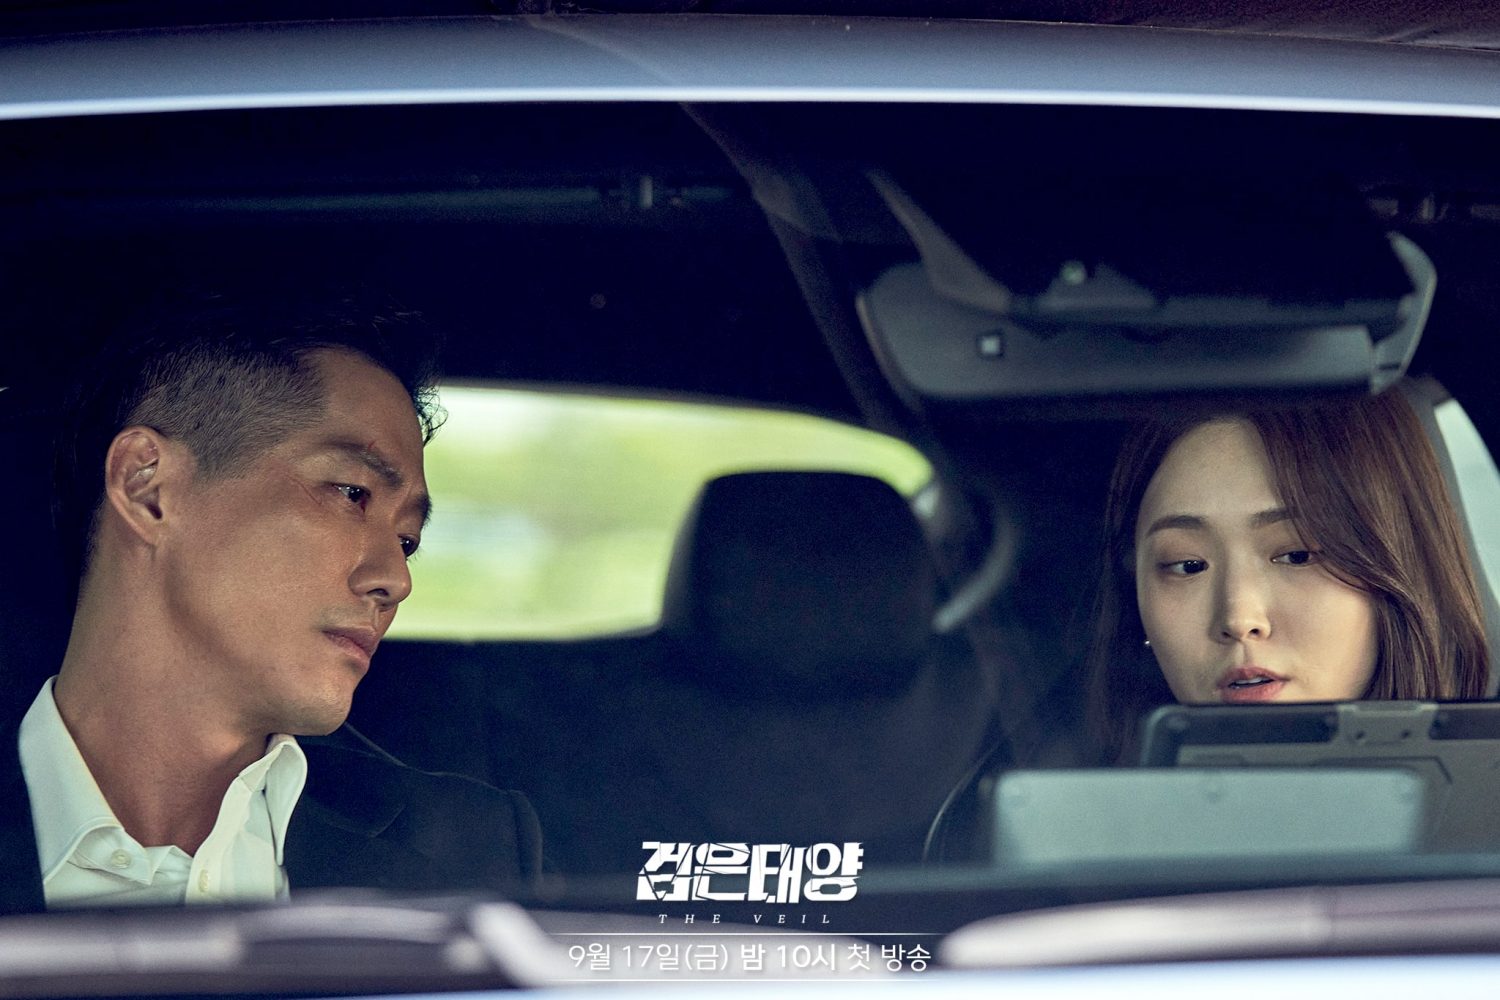 Phim Kim Ji Eun đóng: Vén màn tội ác - The Veil (2021)